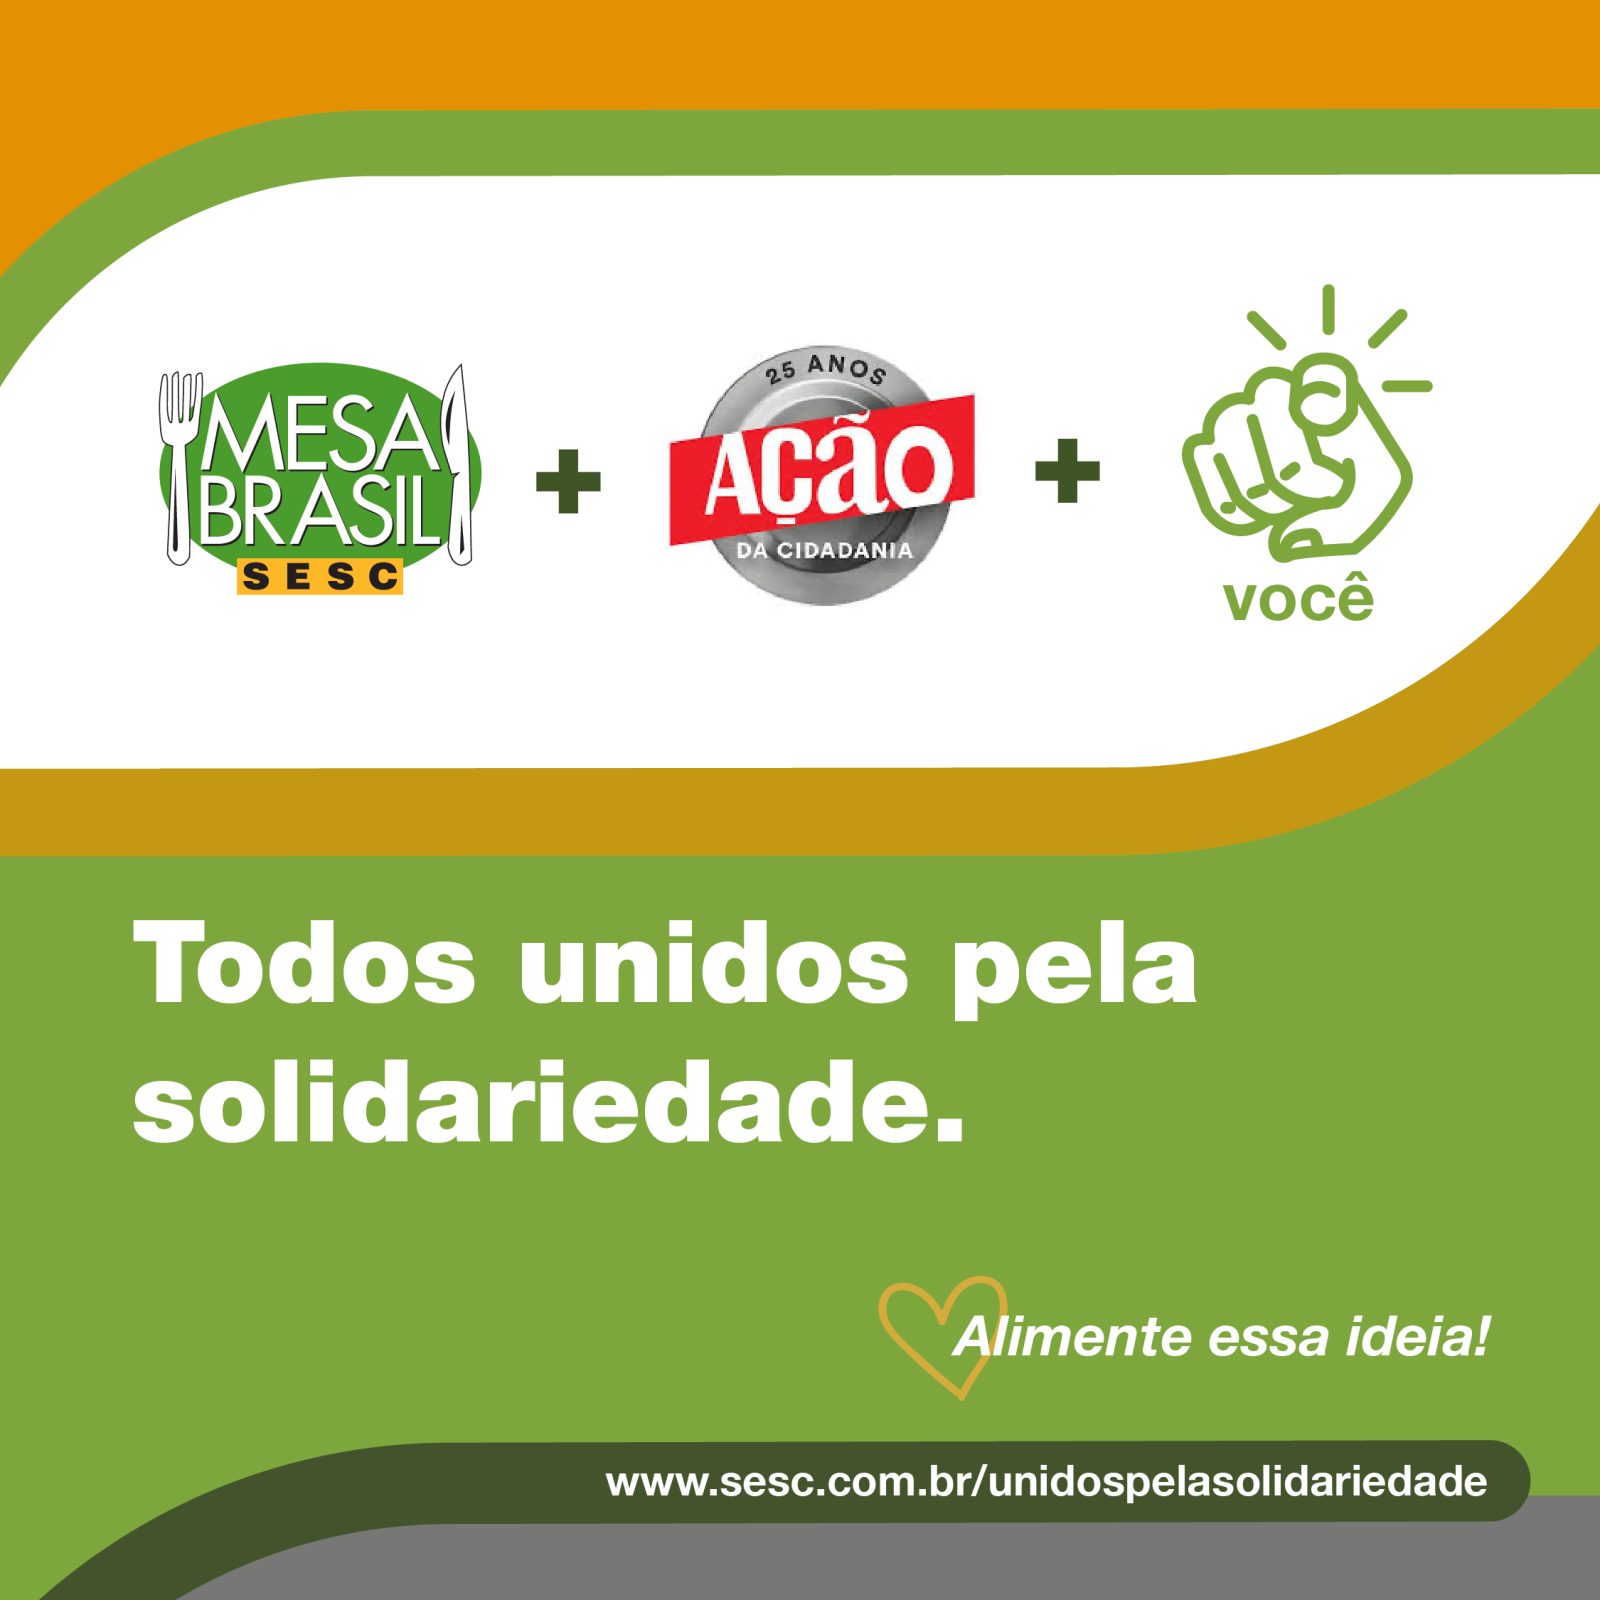 Sesc e Ação da Cidadania se unem e criam a maior iniciativa de distribuição de alimentos da América Latina